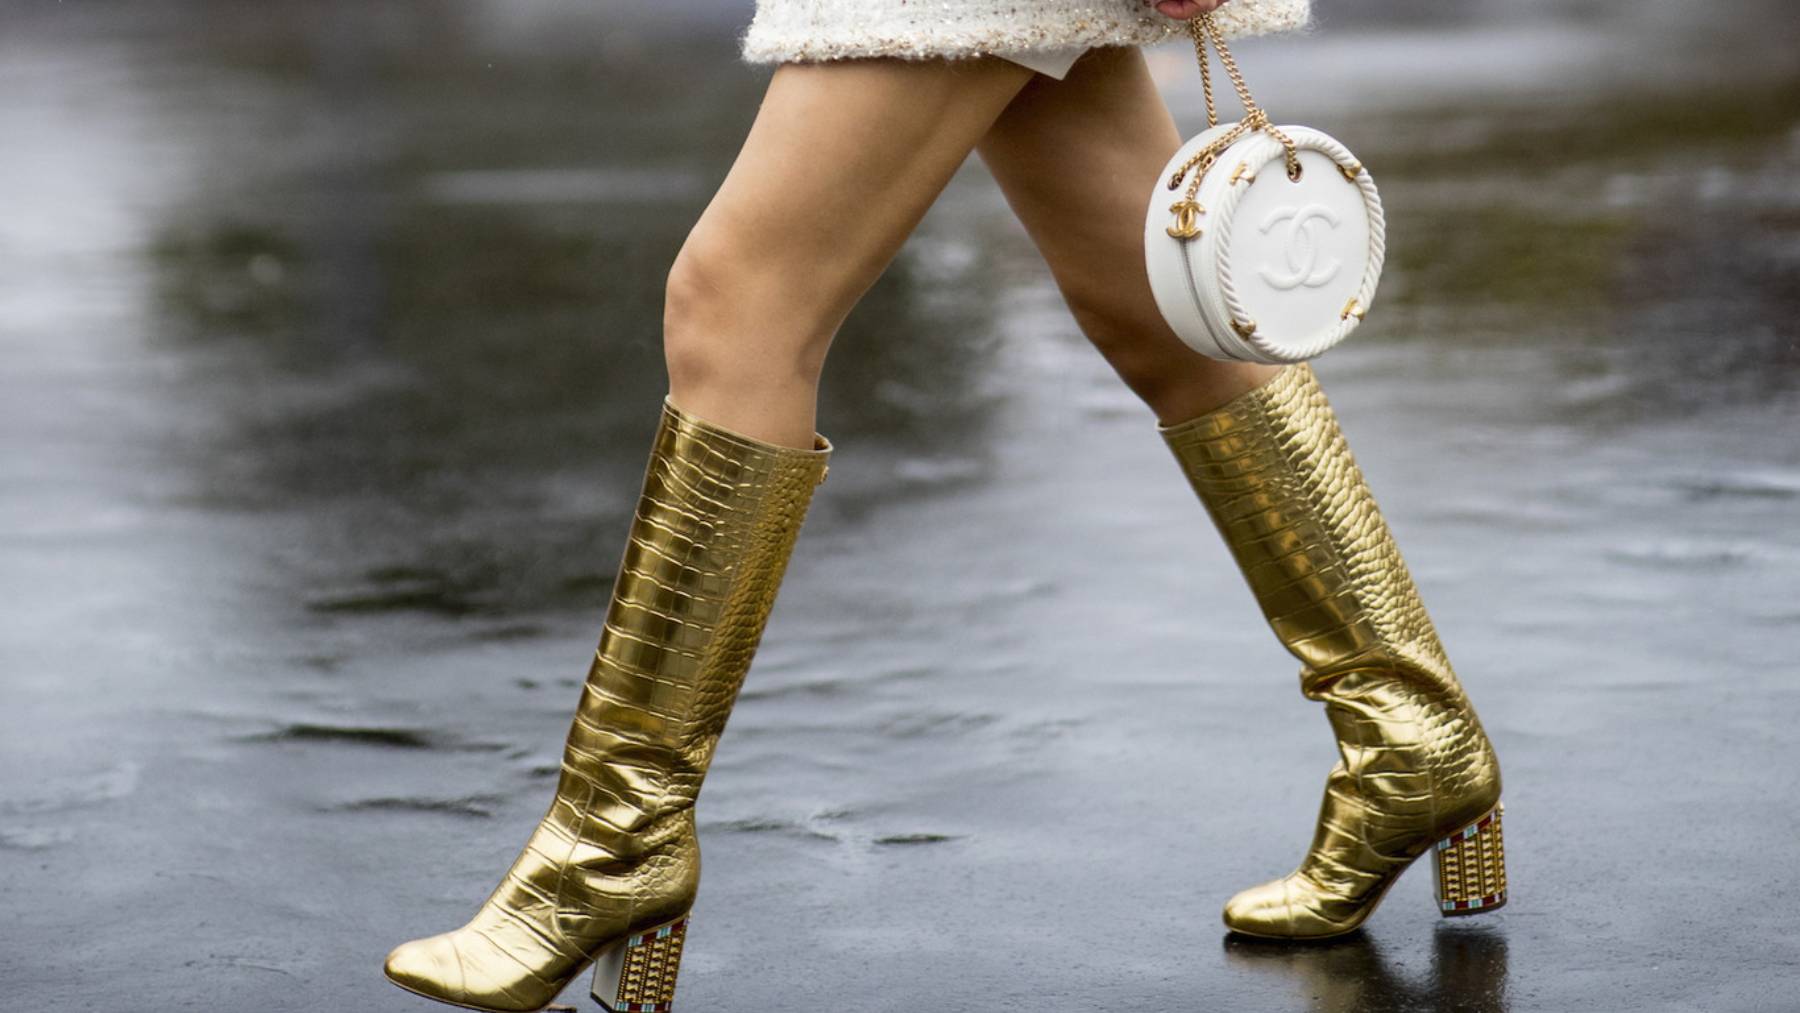 Tratado contar verdad Zara se atreve a clonar las lujosas botas doradas de Chanel de 2.500 euros